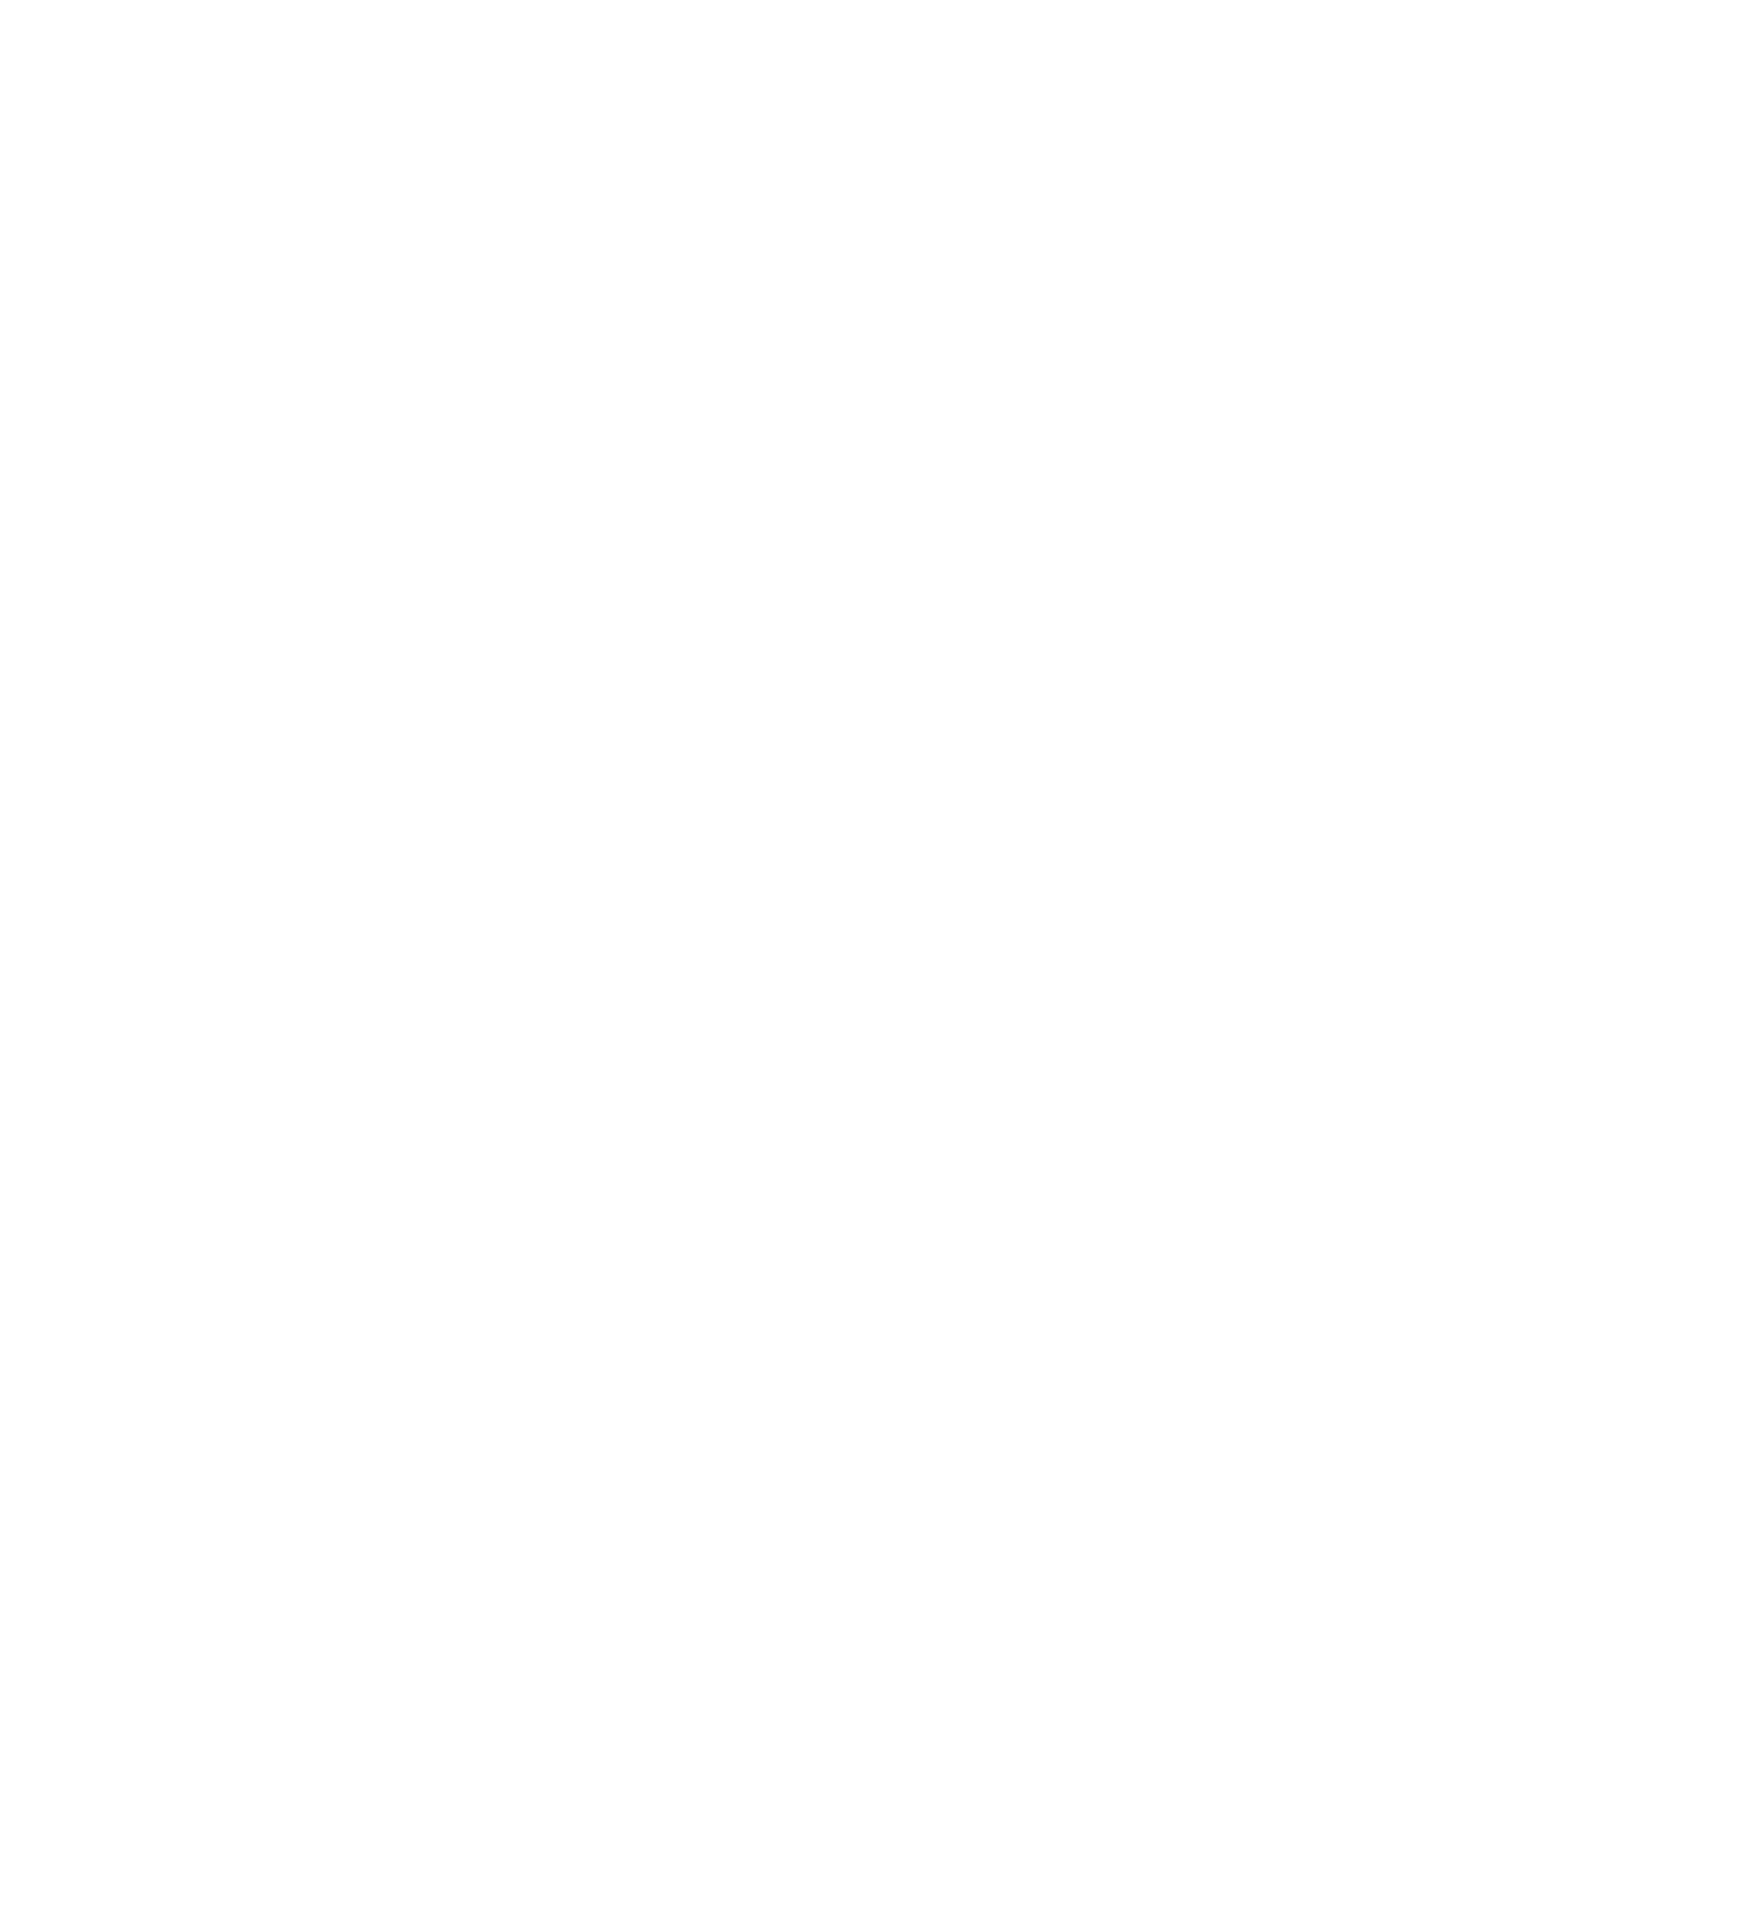 Setec Fondation